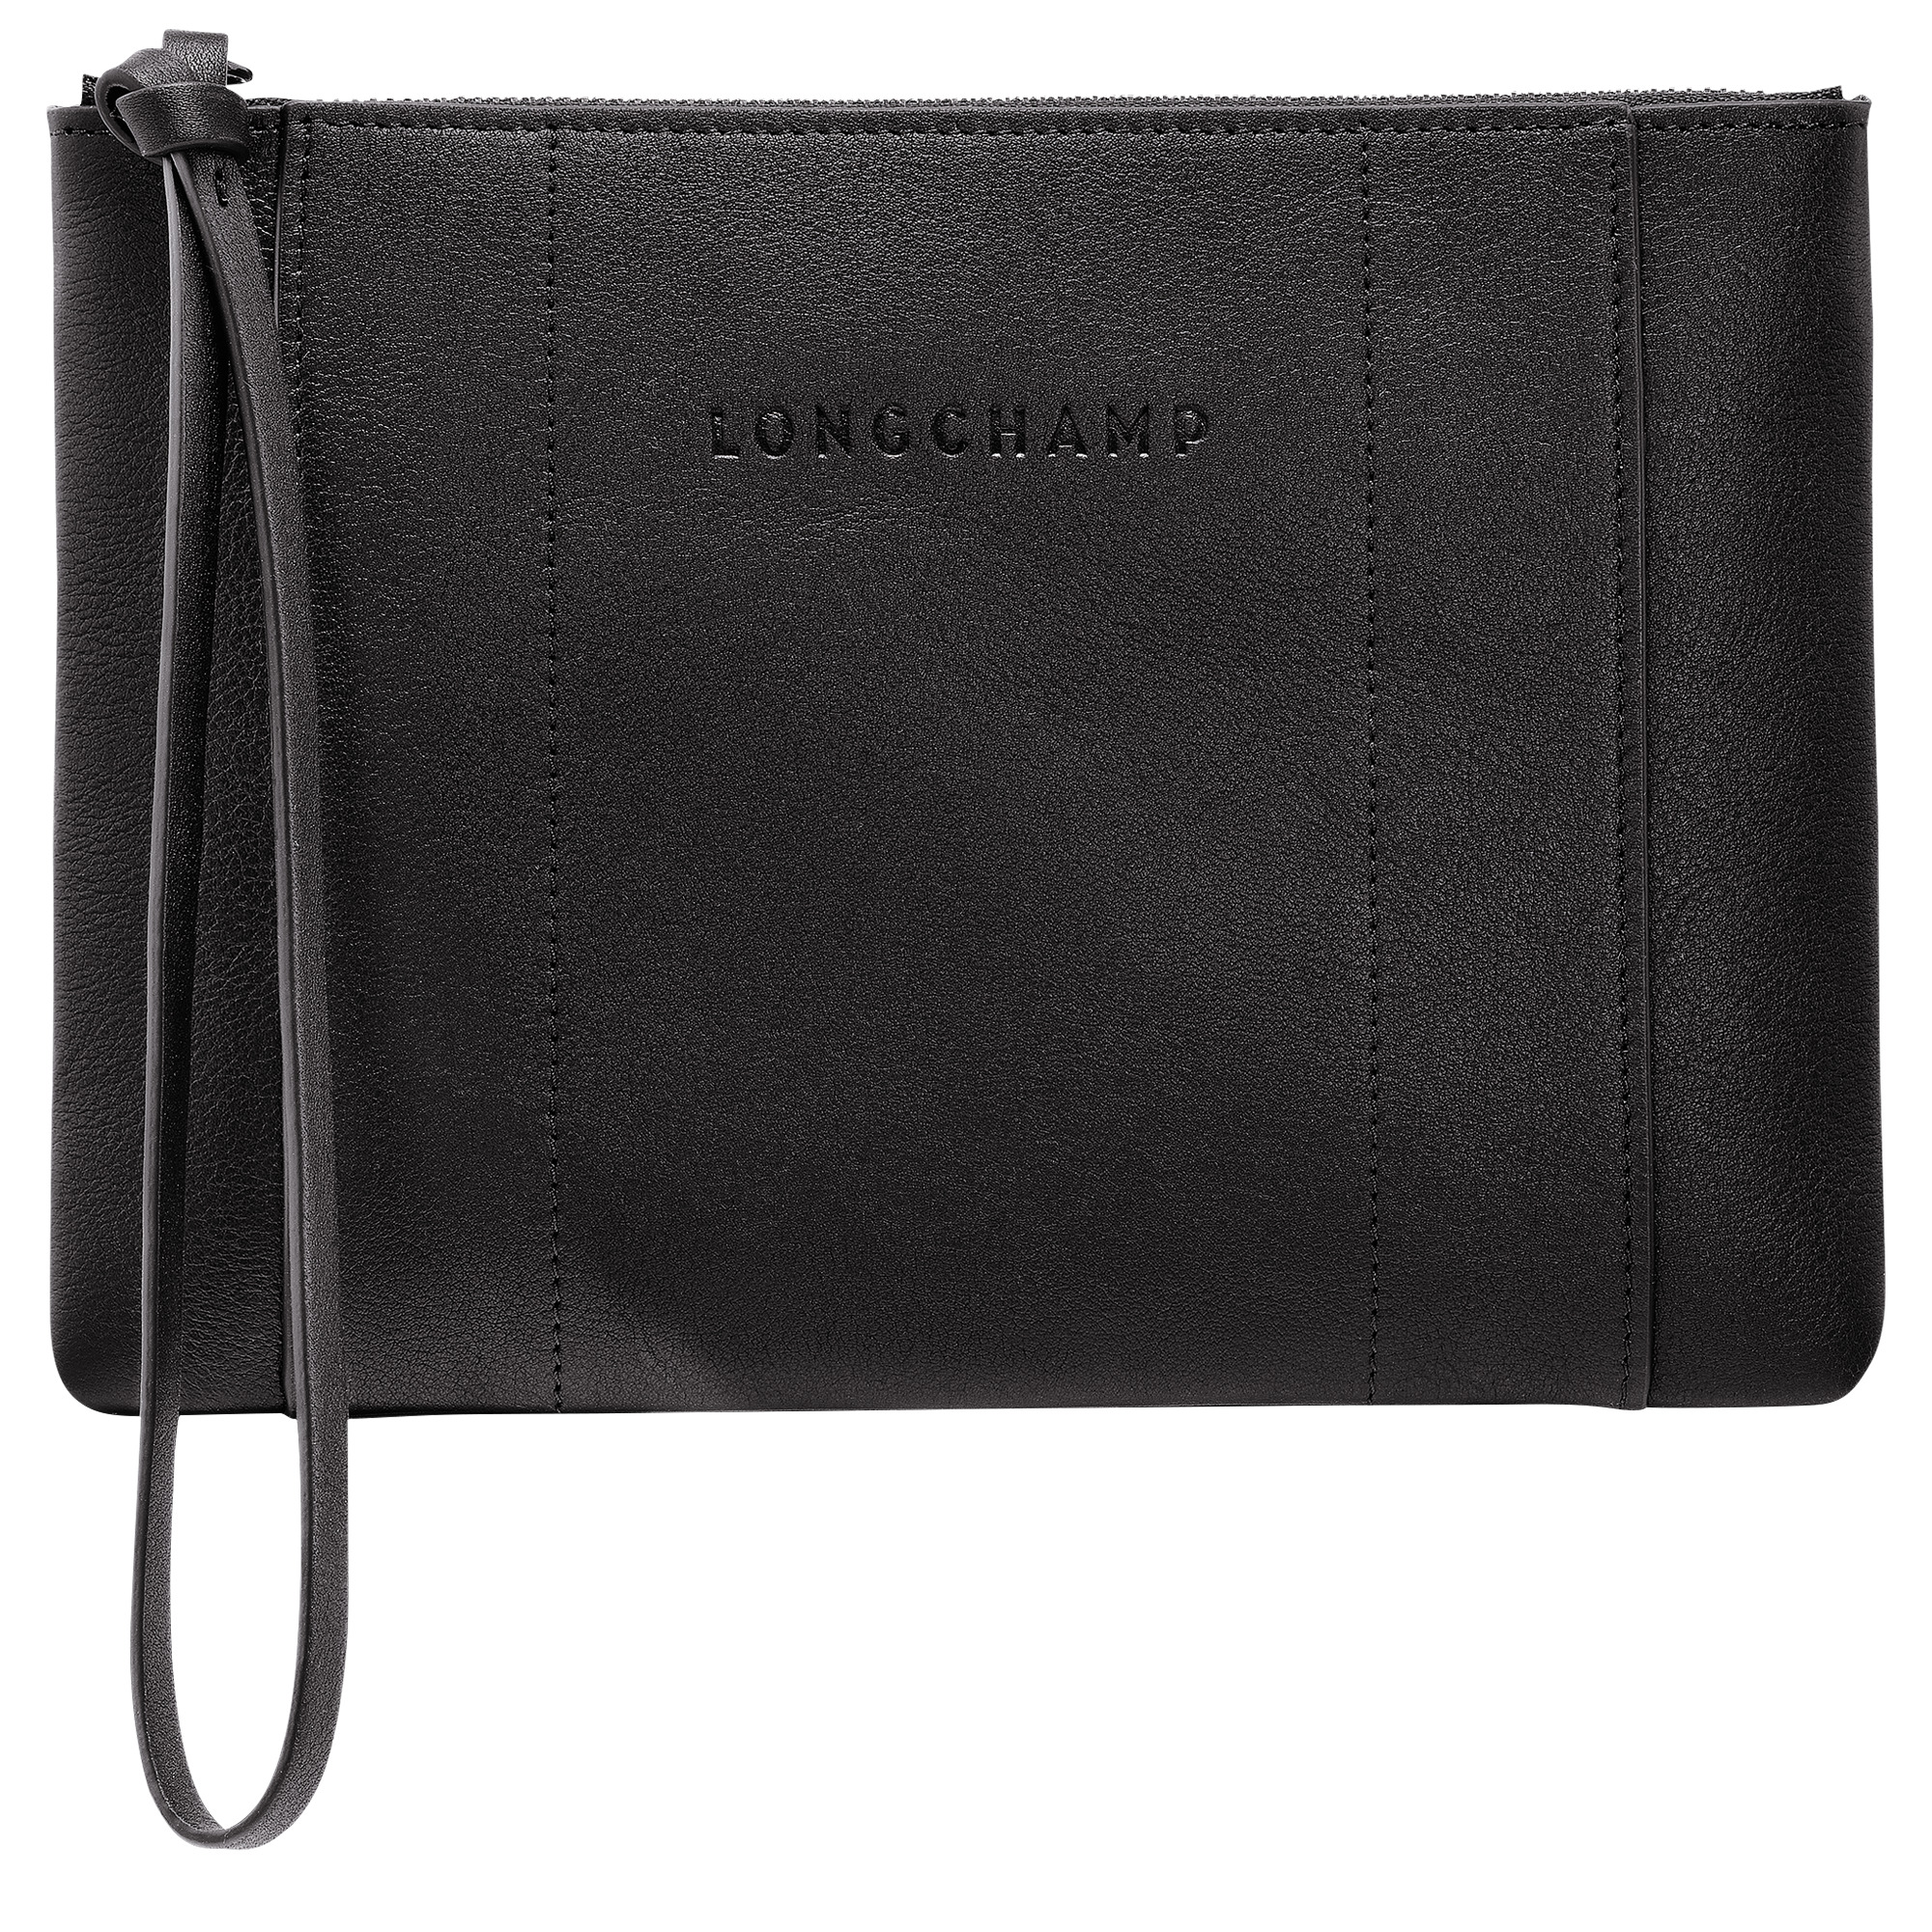 Longchamp 3D Pouch Black - Leather - 1